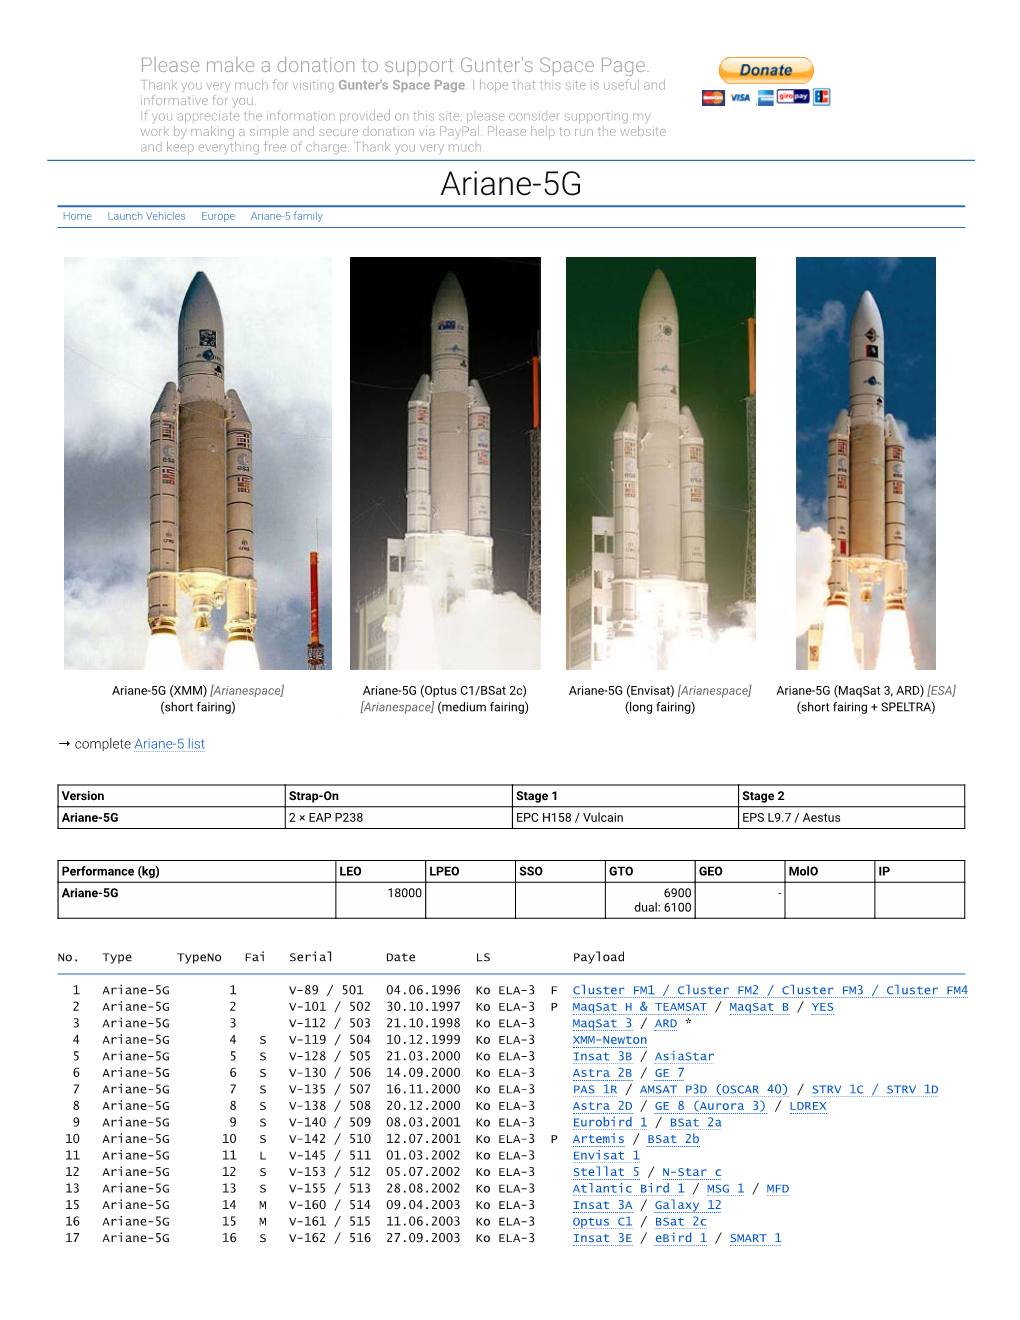 Ariane-5G Home Launch Vehicles Europe Ariane-5 Family